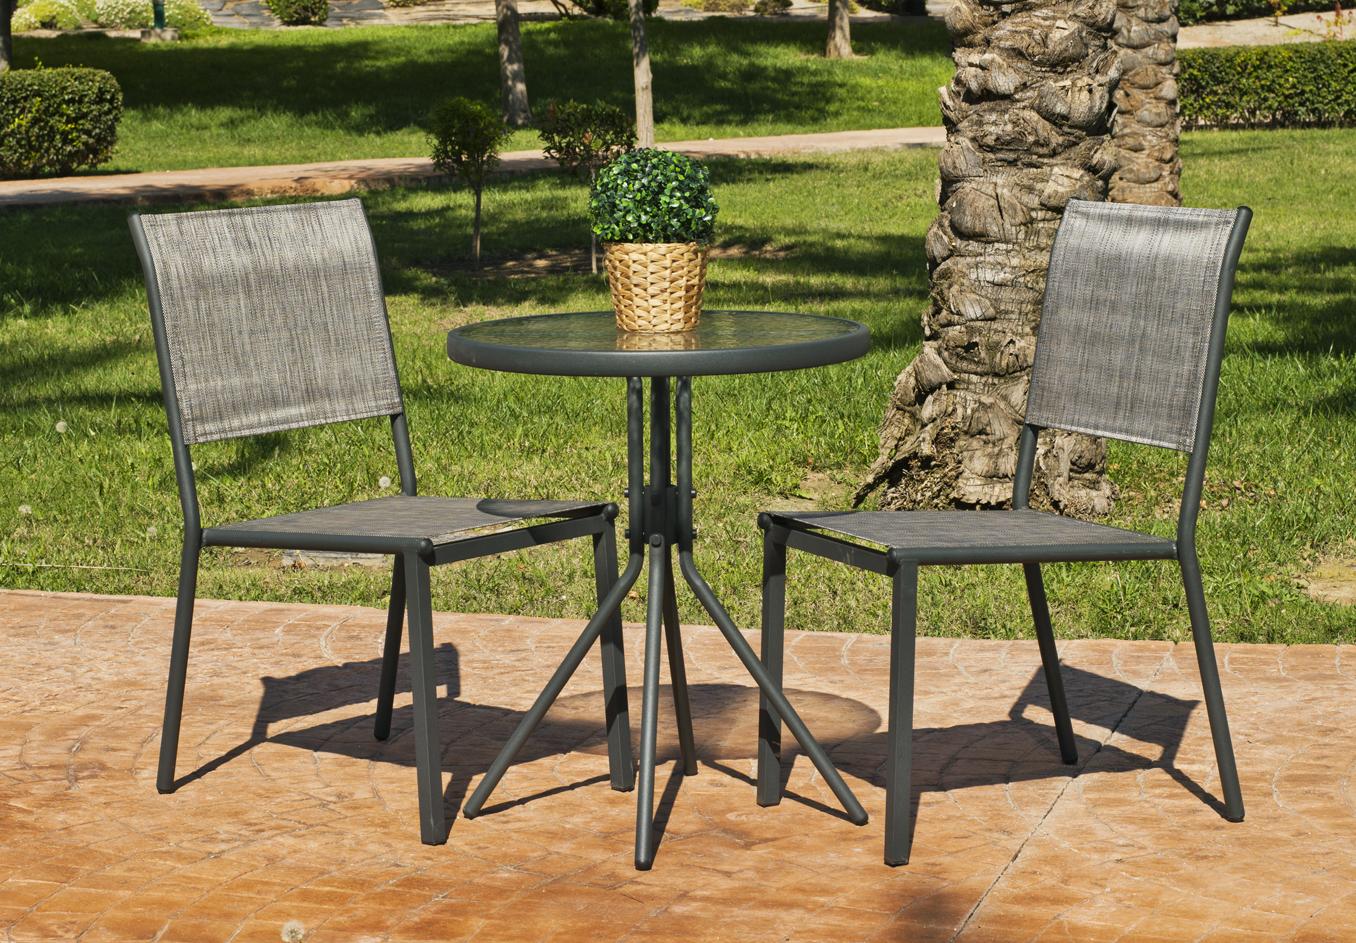 Conjunto de acero color antracita: mesa redonda de 70 cm. Con tapa de cristal templado + 2 sillas de acero y textilen